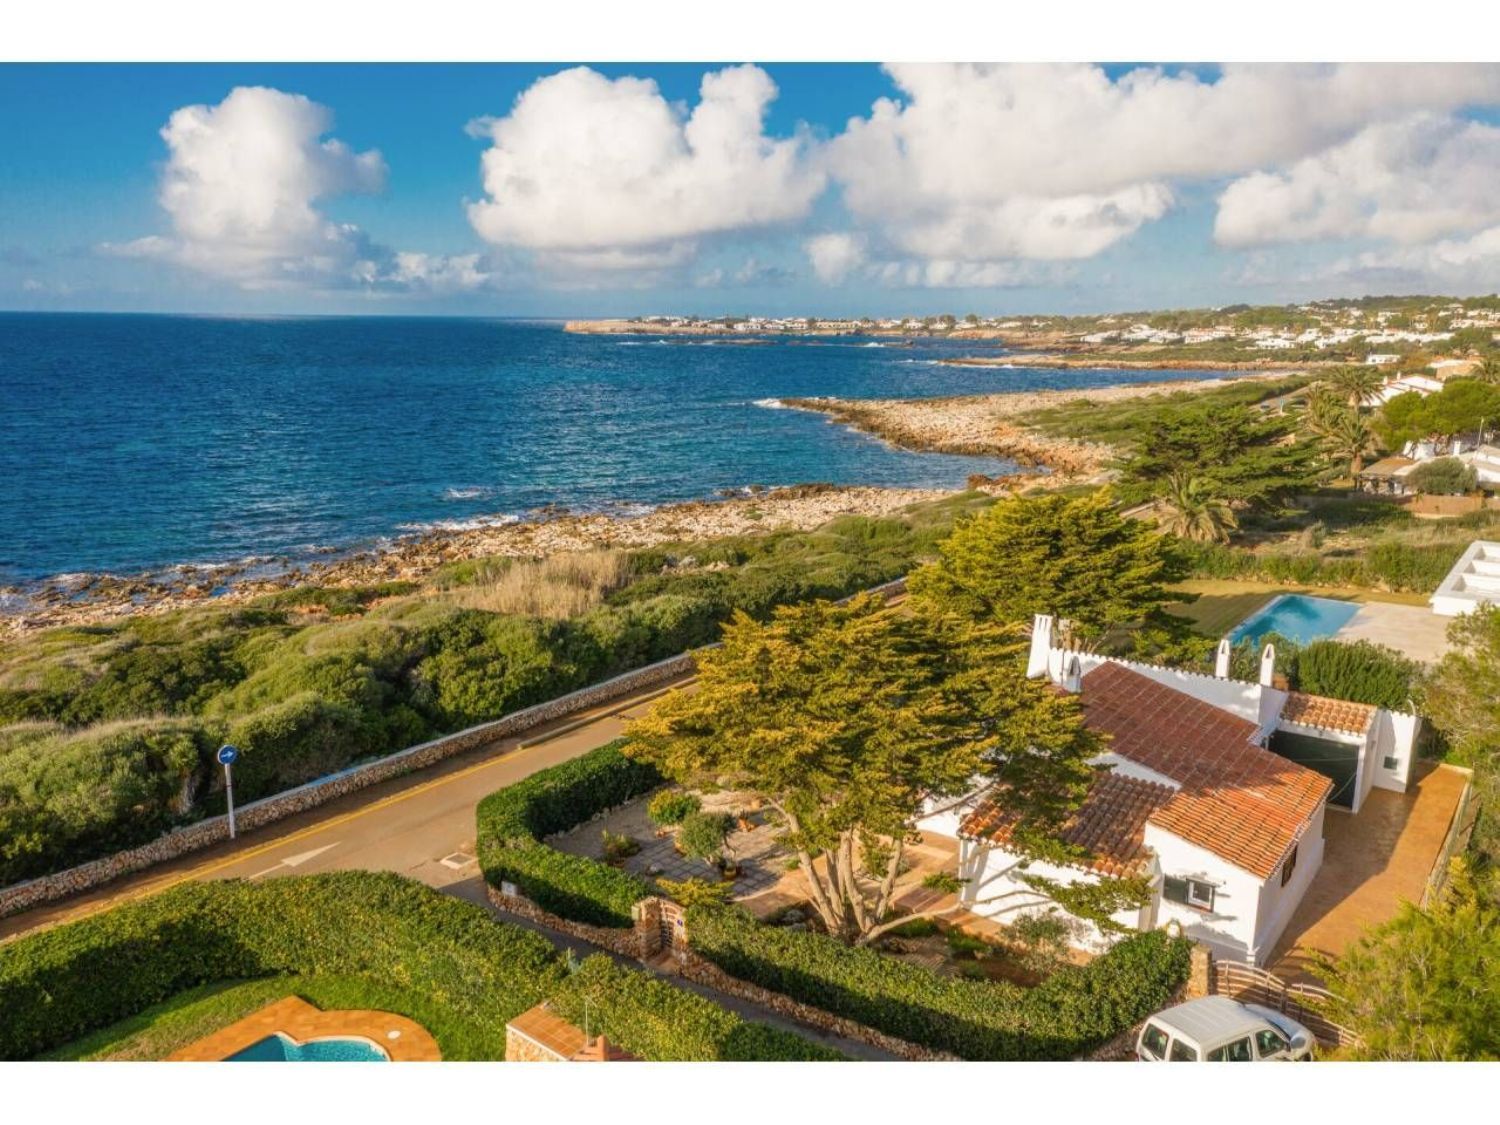 Casa en venda en primera línia de mar a Sant Lluís, a Menorca